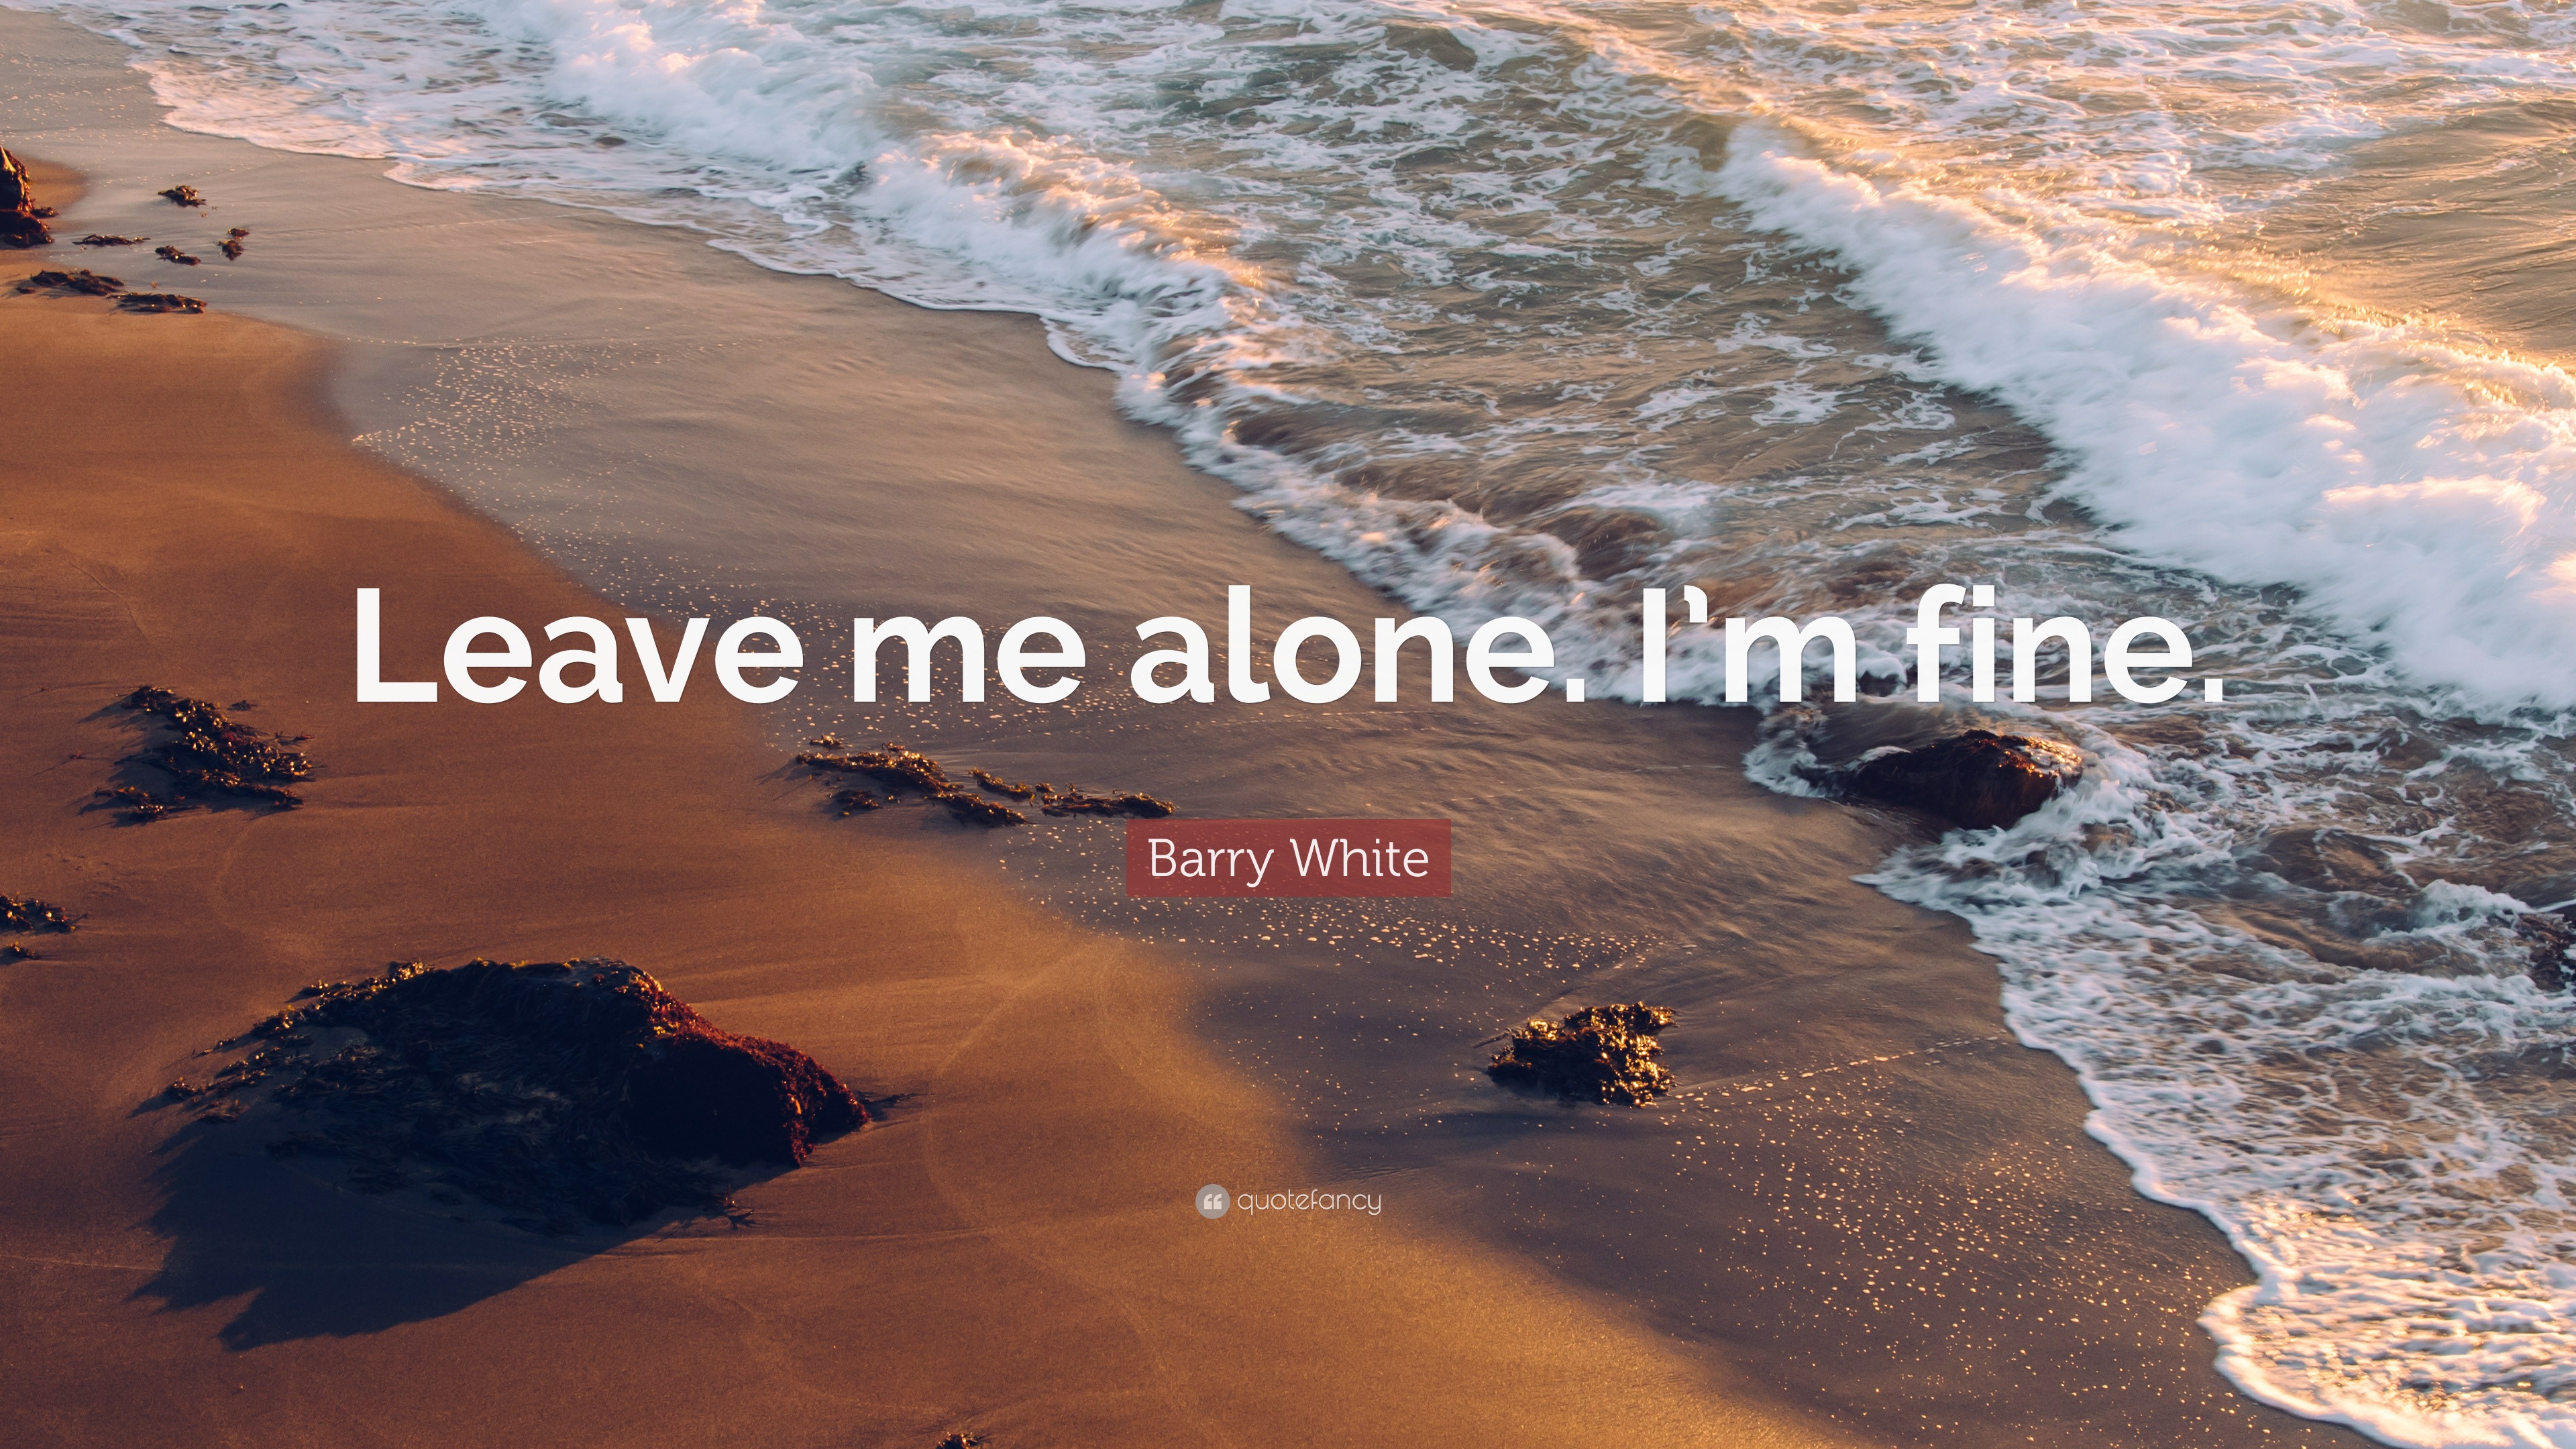 Barry White Quote: “Leave me alone. I'm fine.”